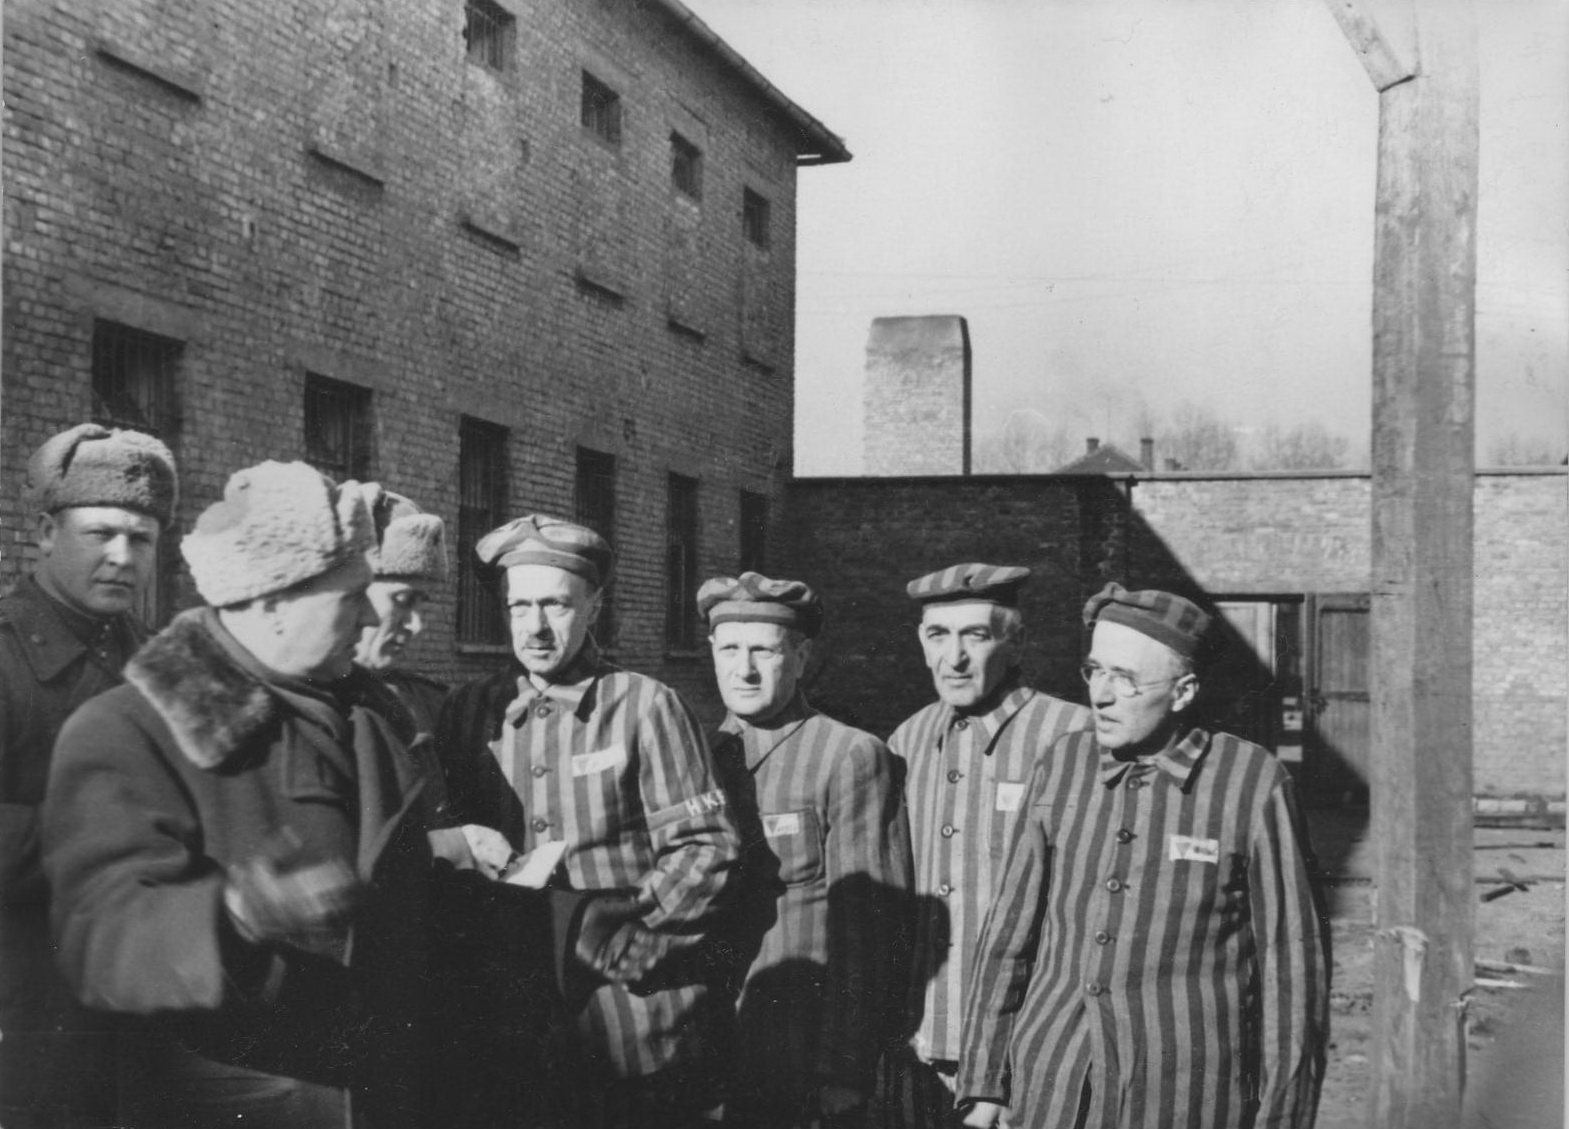 Освобождение лагеря смерти. Лагеря Освенцим Аушвиц-Биркенау. 27 Января 1945 освобождение узников концлагеря Освенцим. Концентрационный лагерь Аушвиц-Биркенау Освенцим Польша. Лагерь Освенцим Биркенау освобождение.